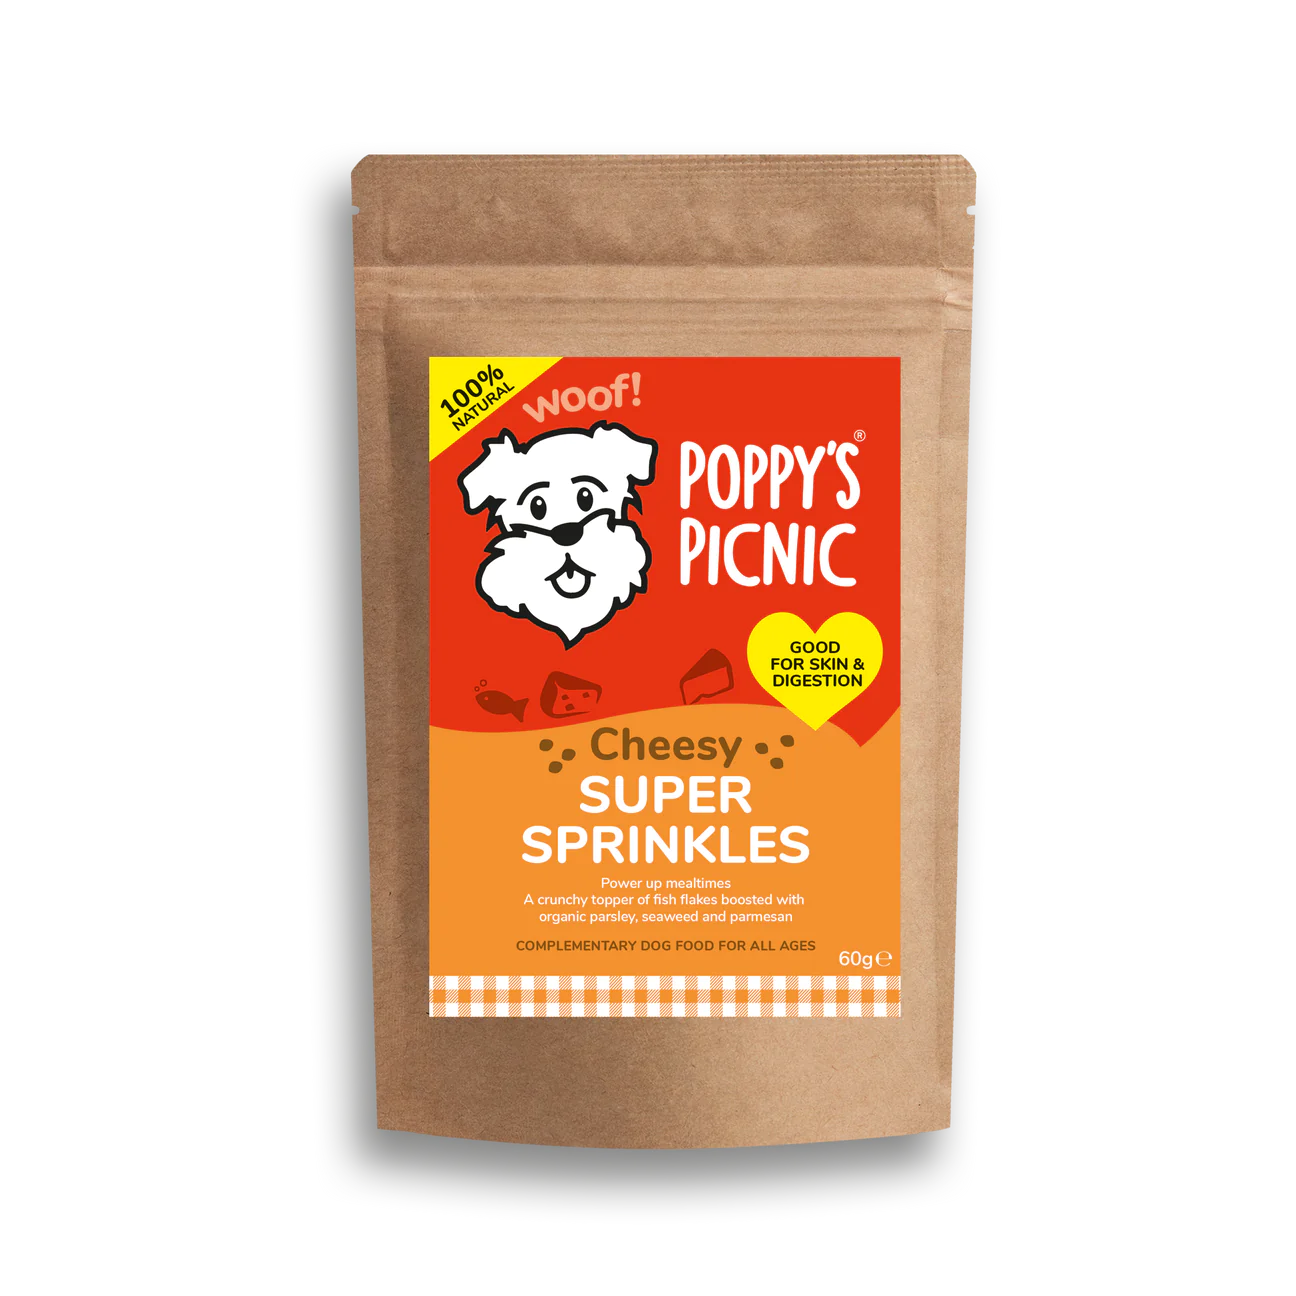 Poppy's Picnic Super Sprinkles Cheesy 60g